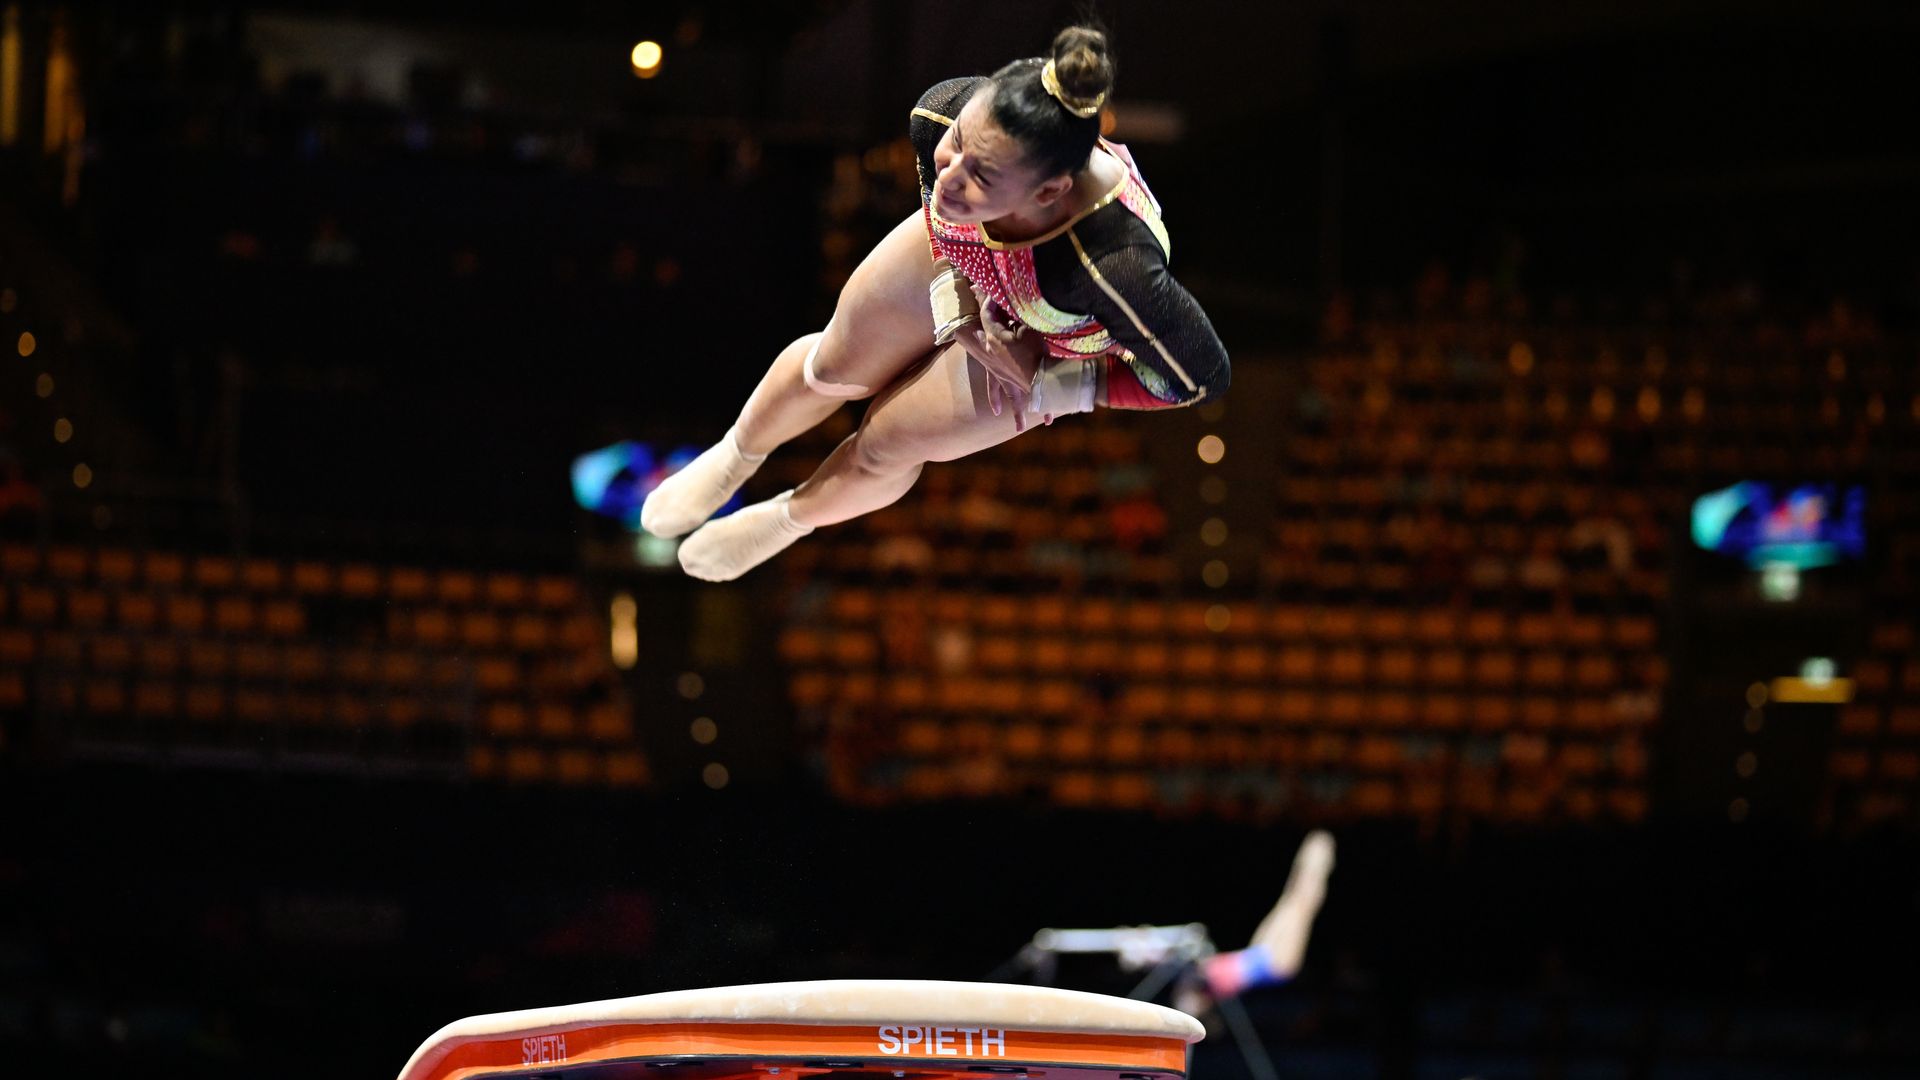 Gymnastique : la Belgique cinquième et qualifiée pour la finale par équipe, Lisa Vaelen qualifiée pour la finale du saut de cheval